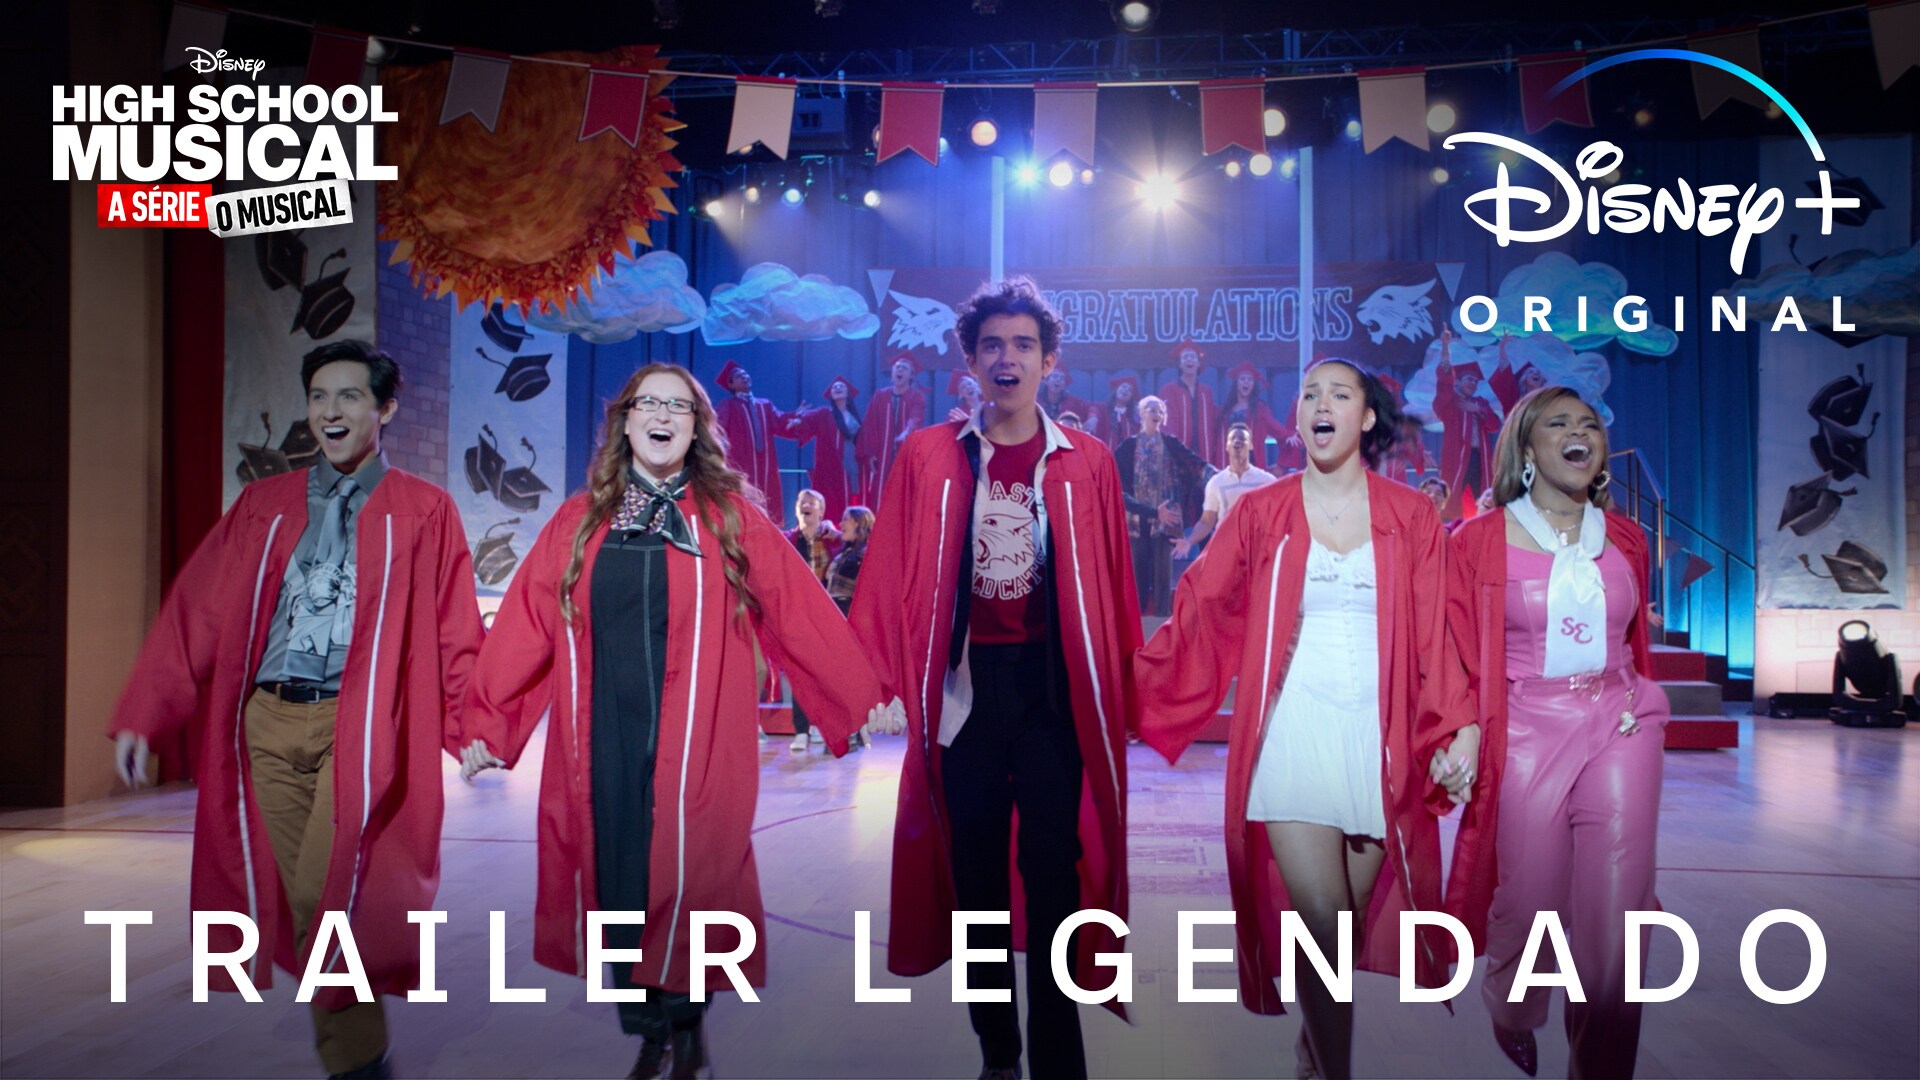 'High School Musical: A Série: O Musical' | Temporada 4 | Trailer Oficial Legendado | Disney+